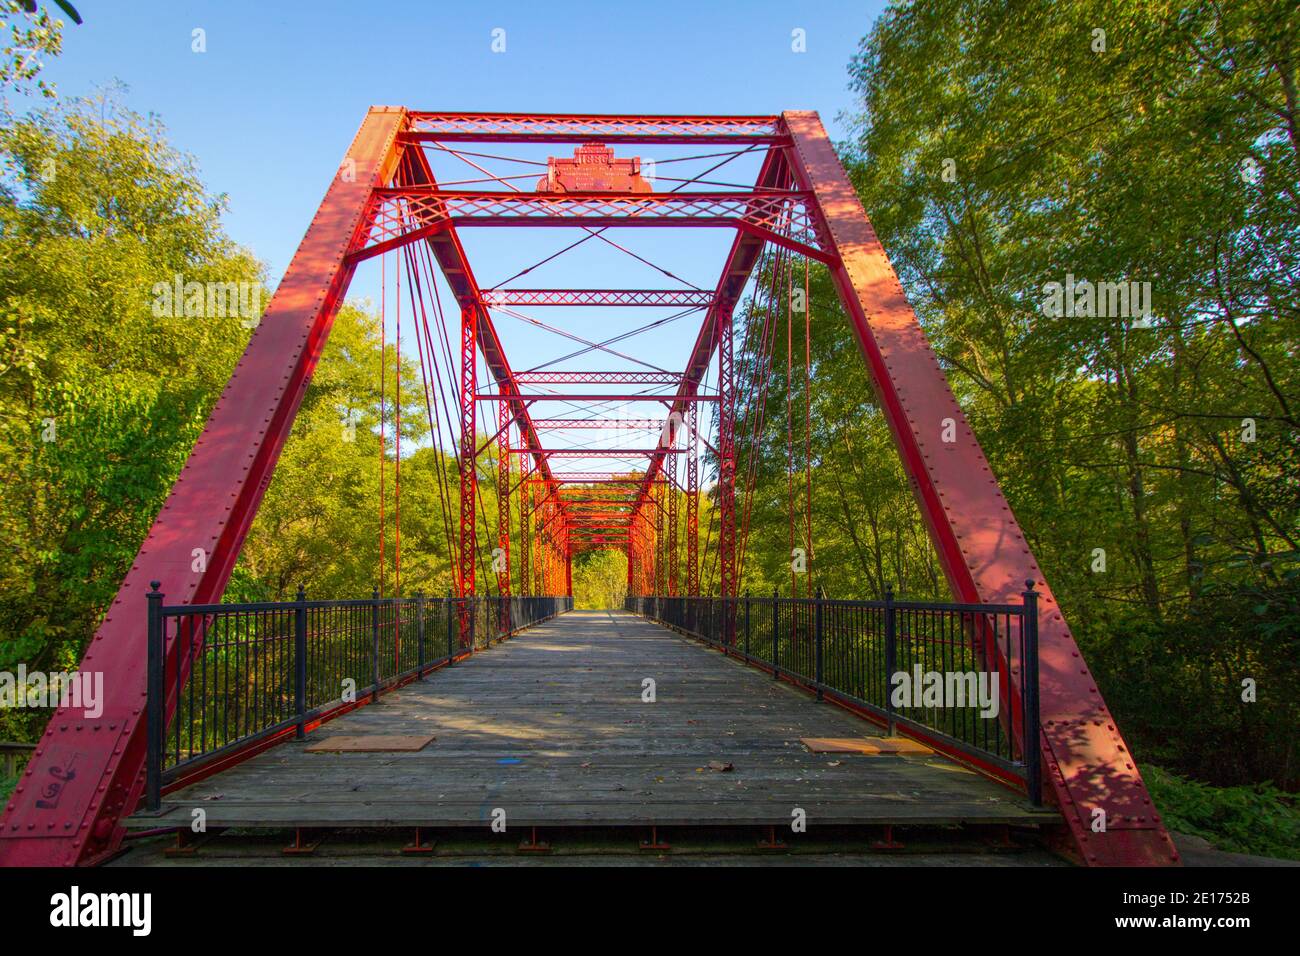 El parque Historic Bridge en Battle Creek, Michigan, recupera y reacondiciona puentes históricos de todo el estado de Michigan utilizados para rutas de senderismo Foto de stock